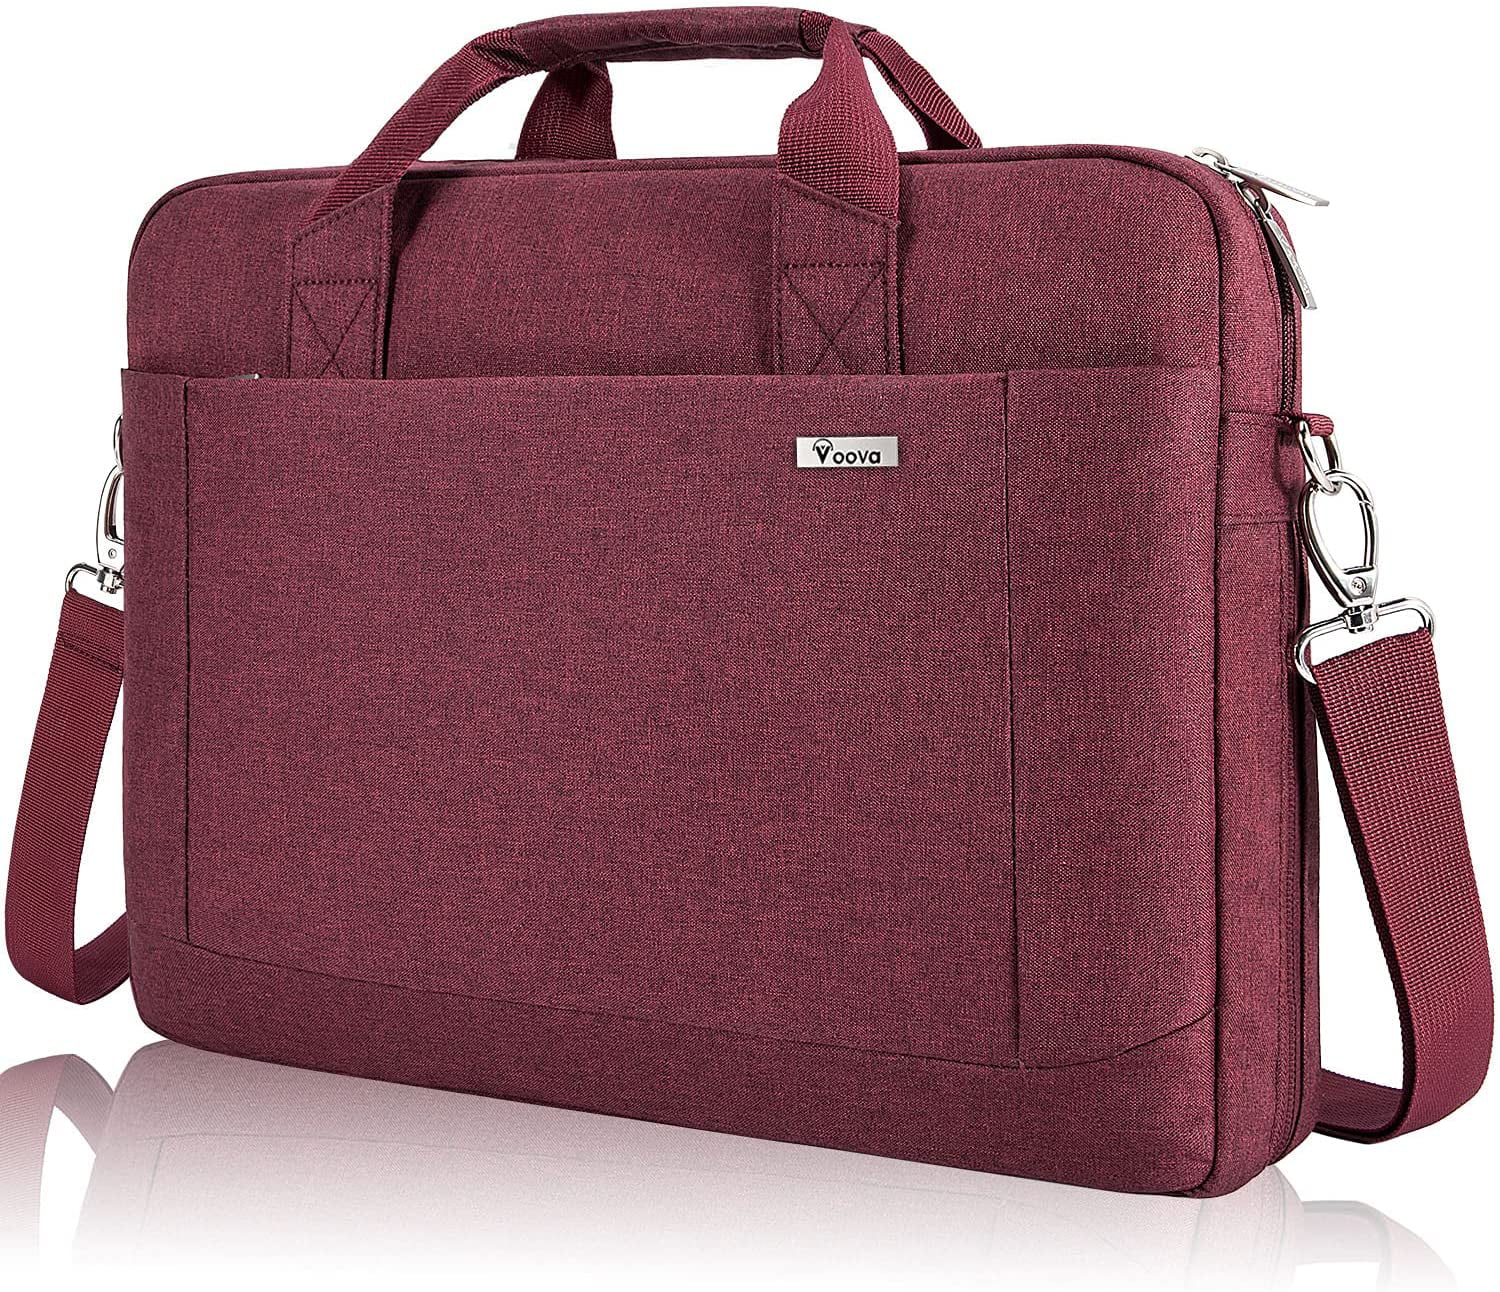 Sunset Sea Face Laptop Bag Satchel Tablet Sleeve Bussiness Shoulder Bag Document Handbag Briefcase 15x5.4 Inch